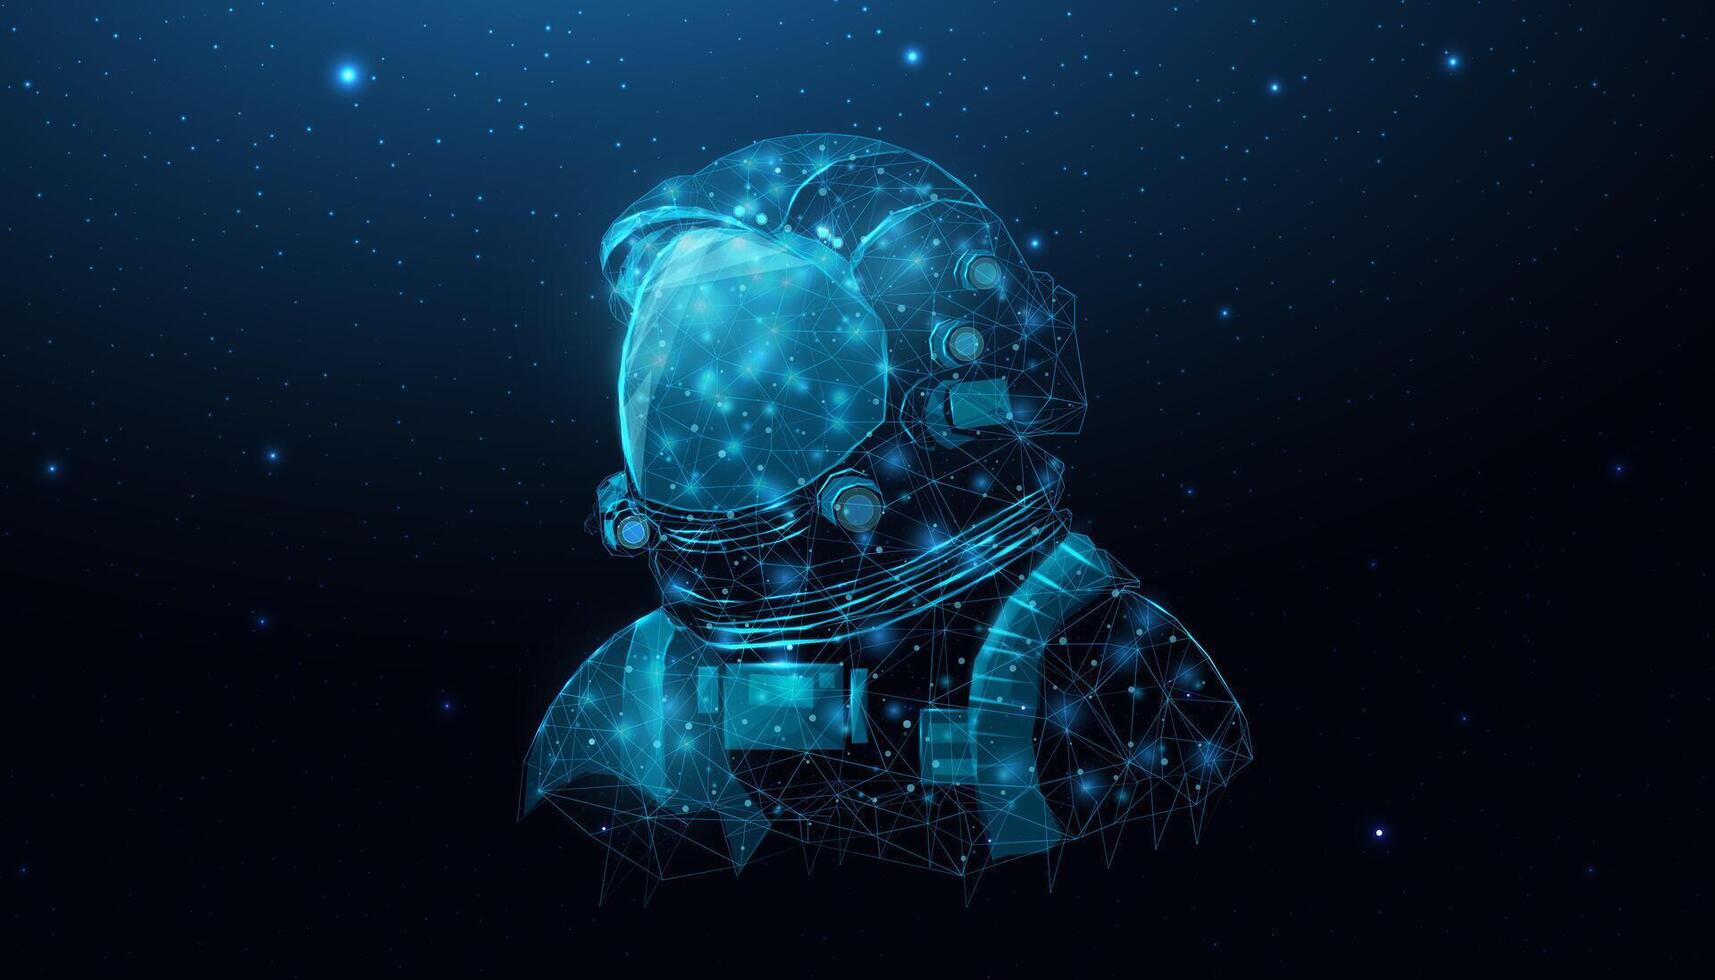 estrutura de arame astronauta dentro espaço galáxia fechar acima. futurista poligonal cosmonauta capacete, espaço turismo conceito. estrelado abstrato fundo com brilhando humano. vetor ilustração.